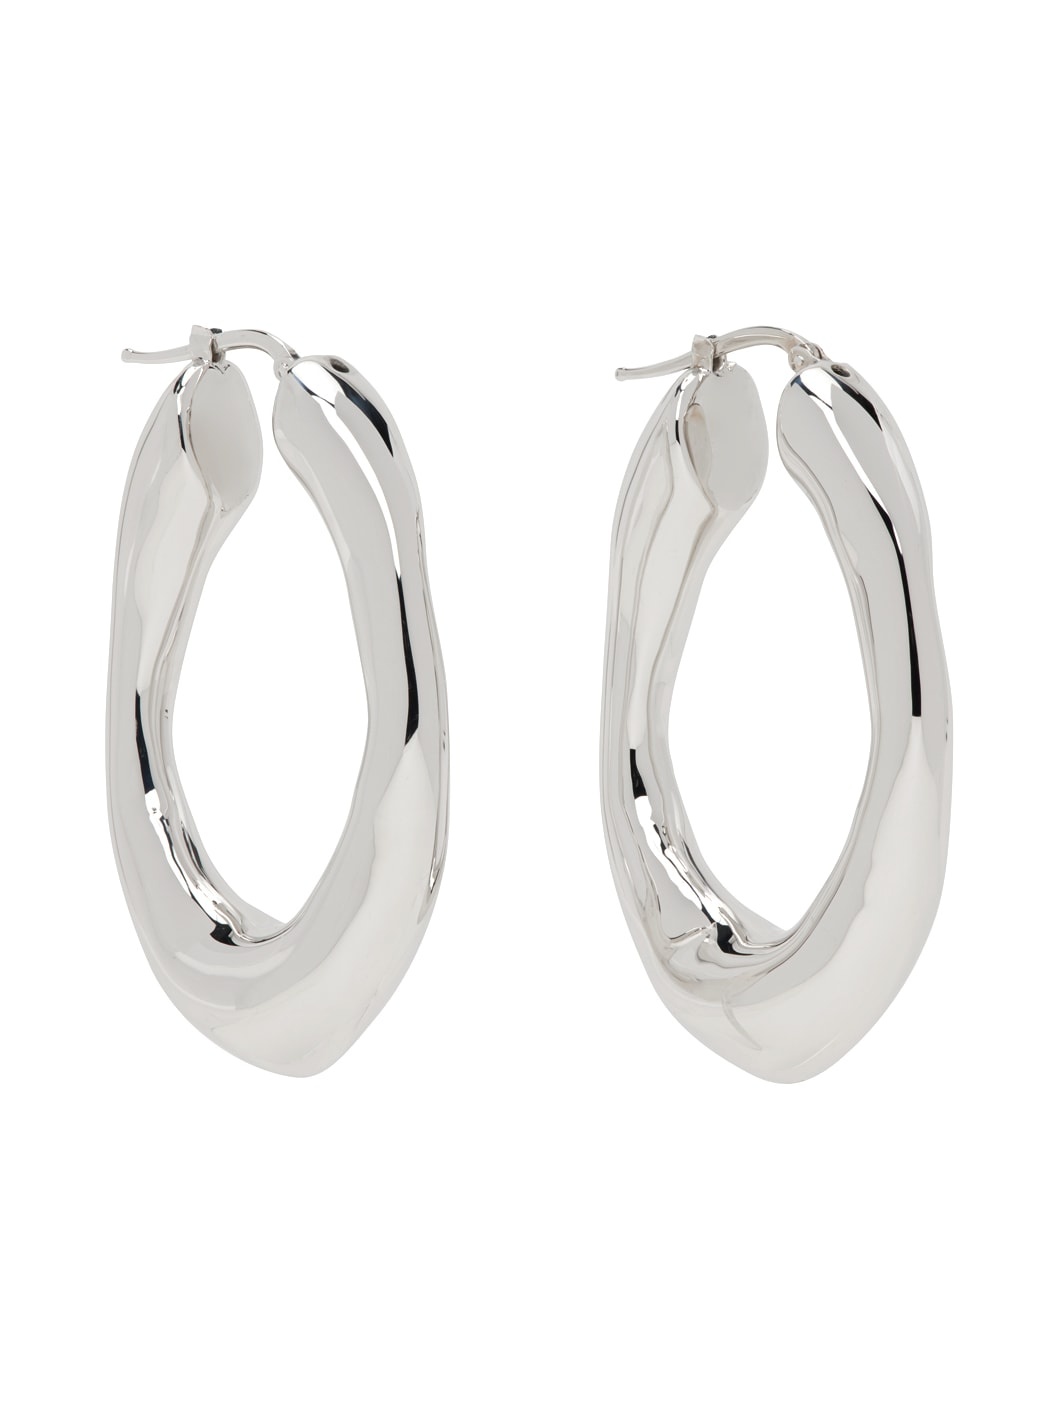 Silver Hoop Earrings - 2